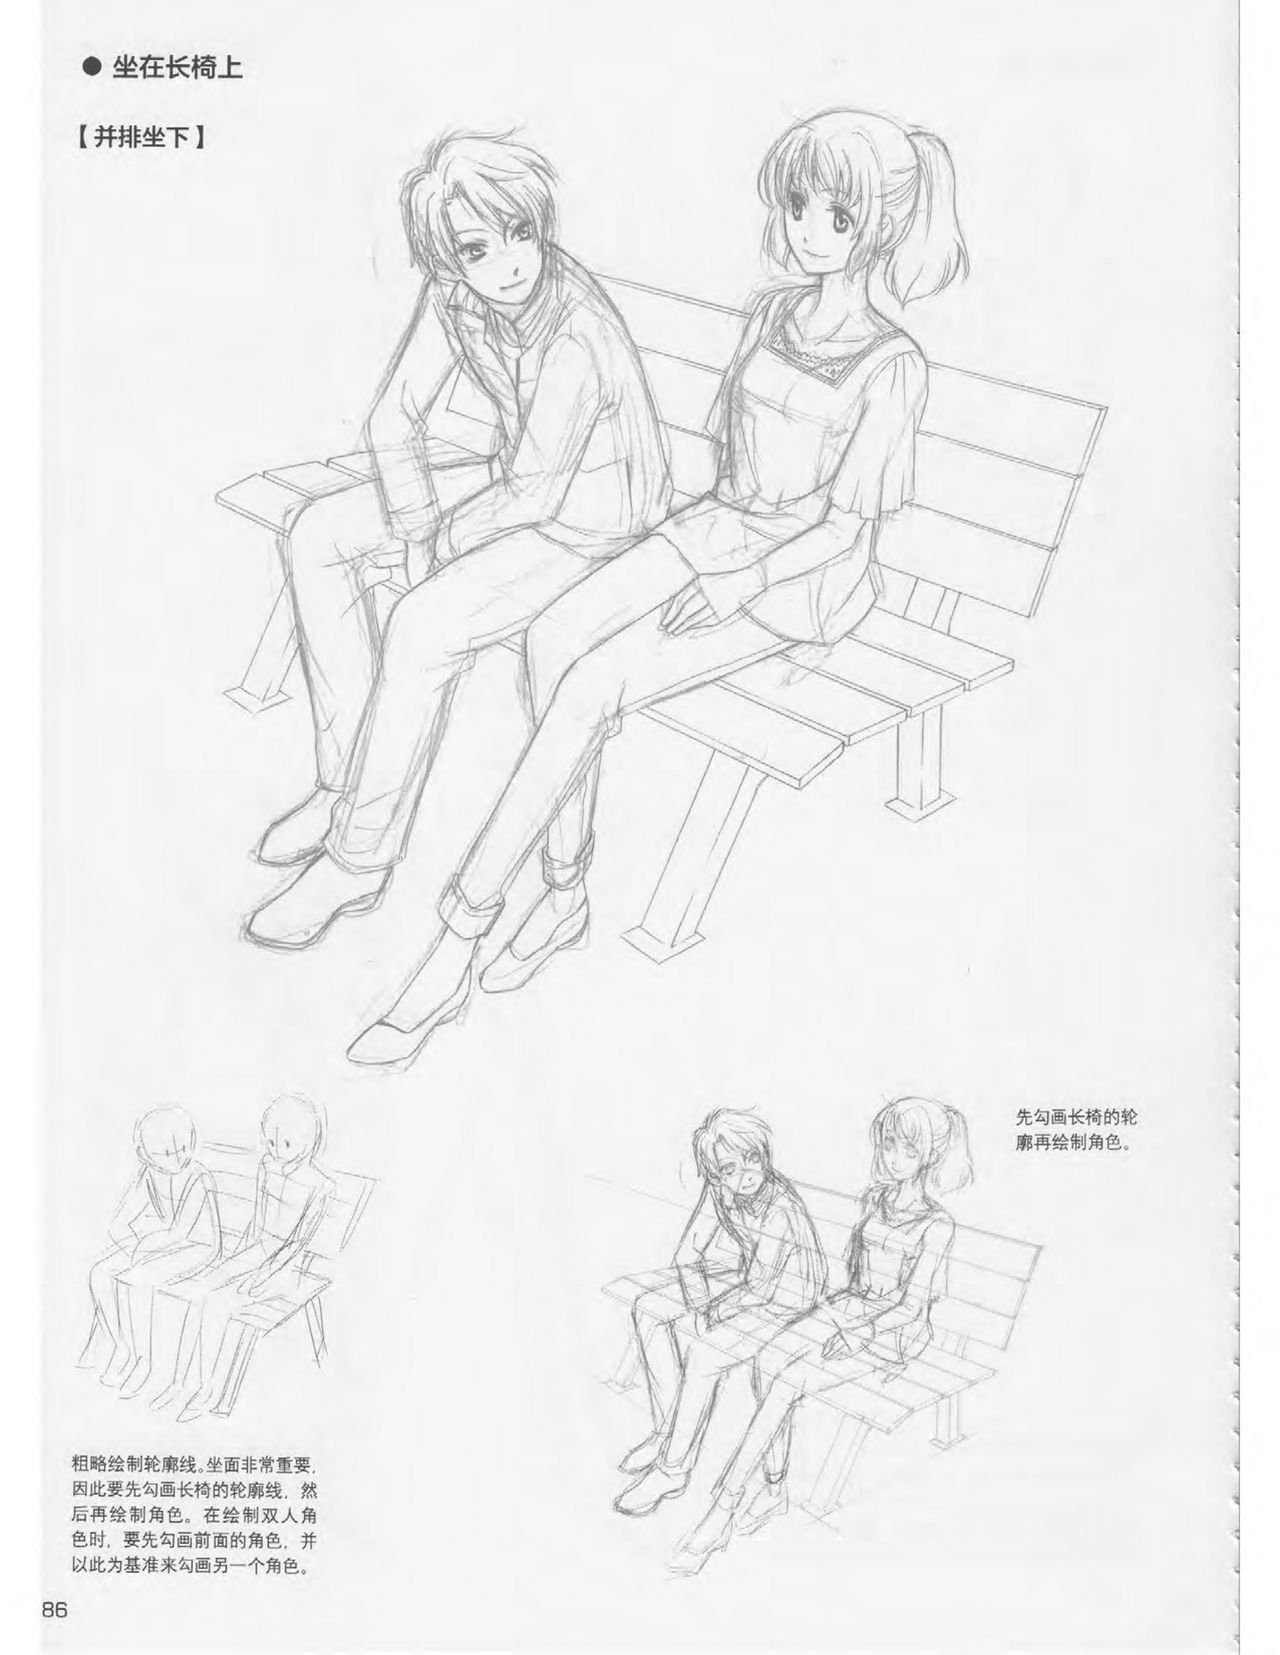 Japanese Manga Master Lecture 3: Lin Akira and Kakumaru Maru Talk About Glamorous Character Modeling 86